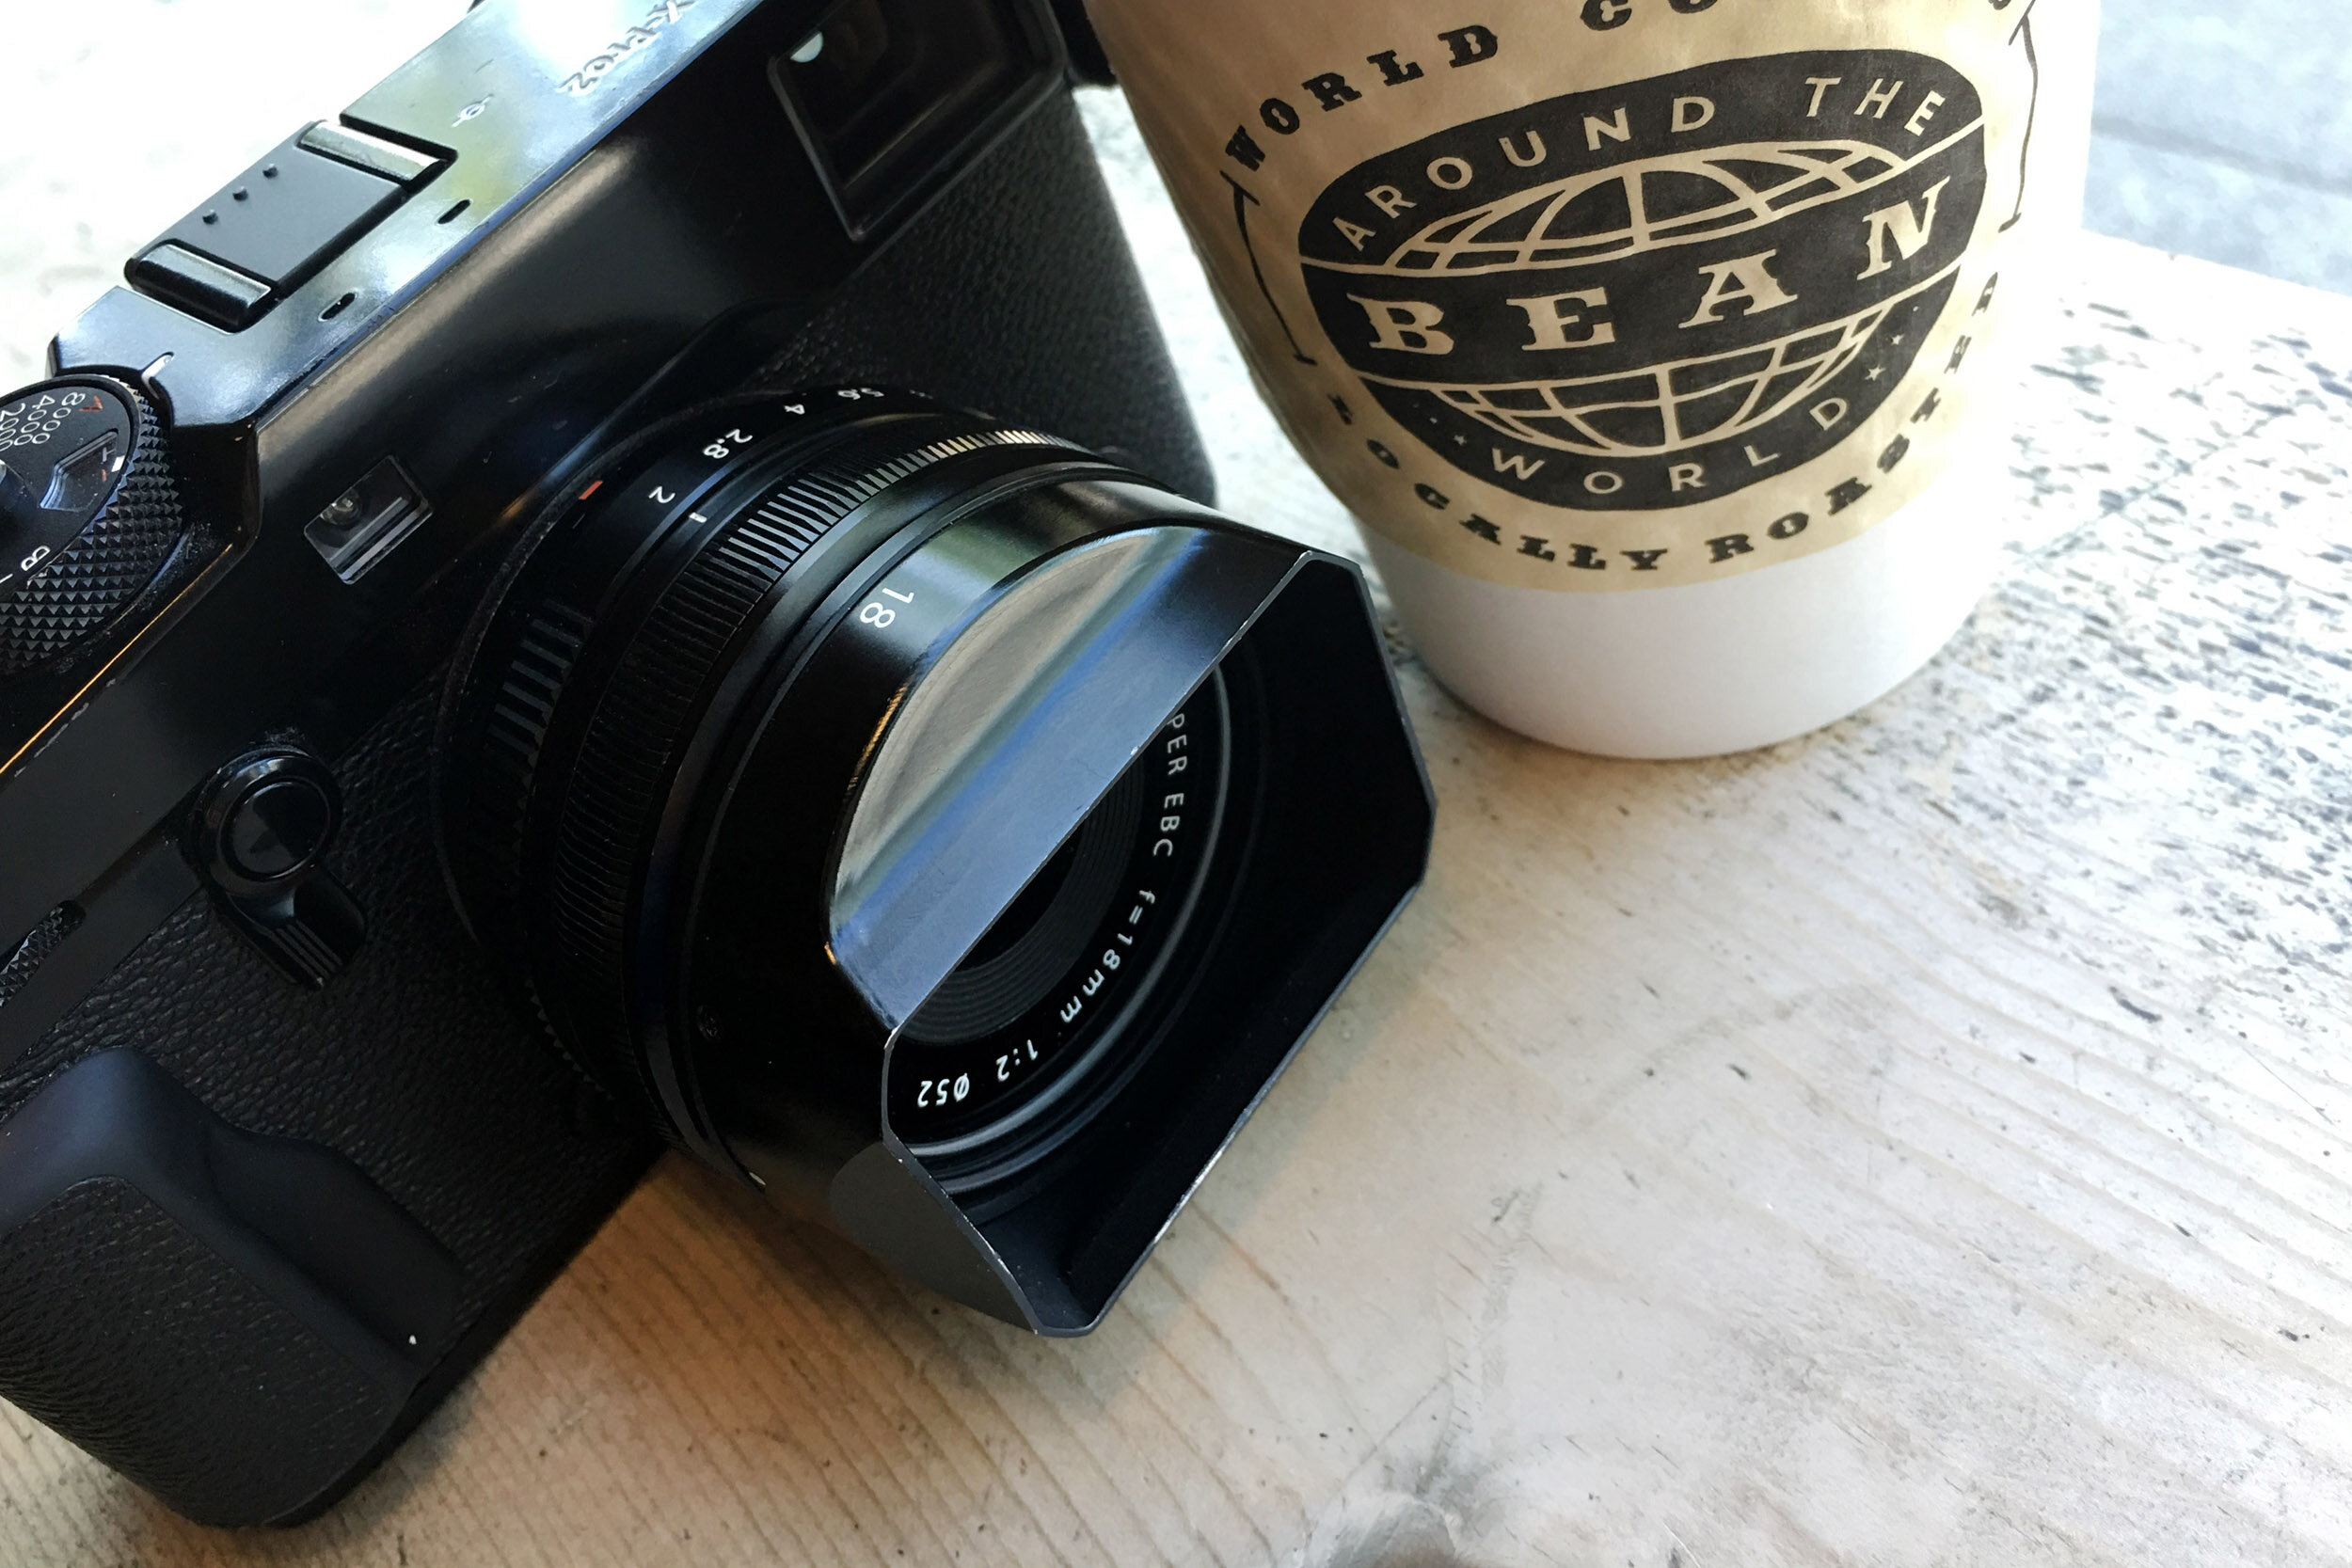 Scheiden Proberen Uitwerpselen Fujifilm XF 18mm f/2 R Review | 5050 Travelog